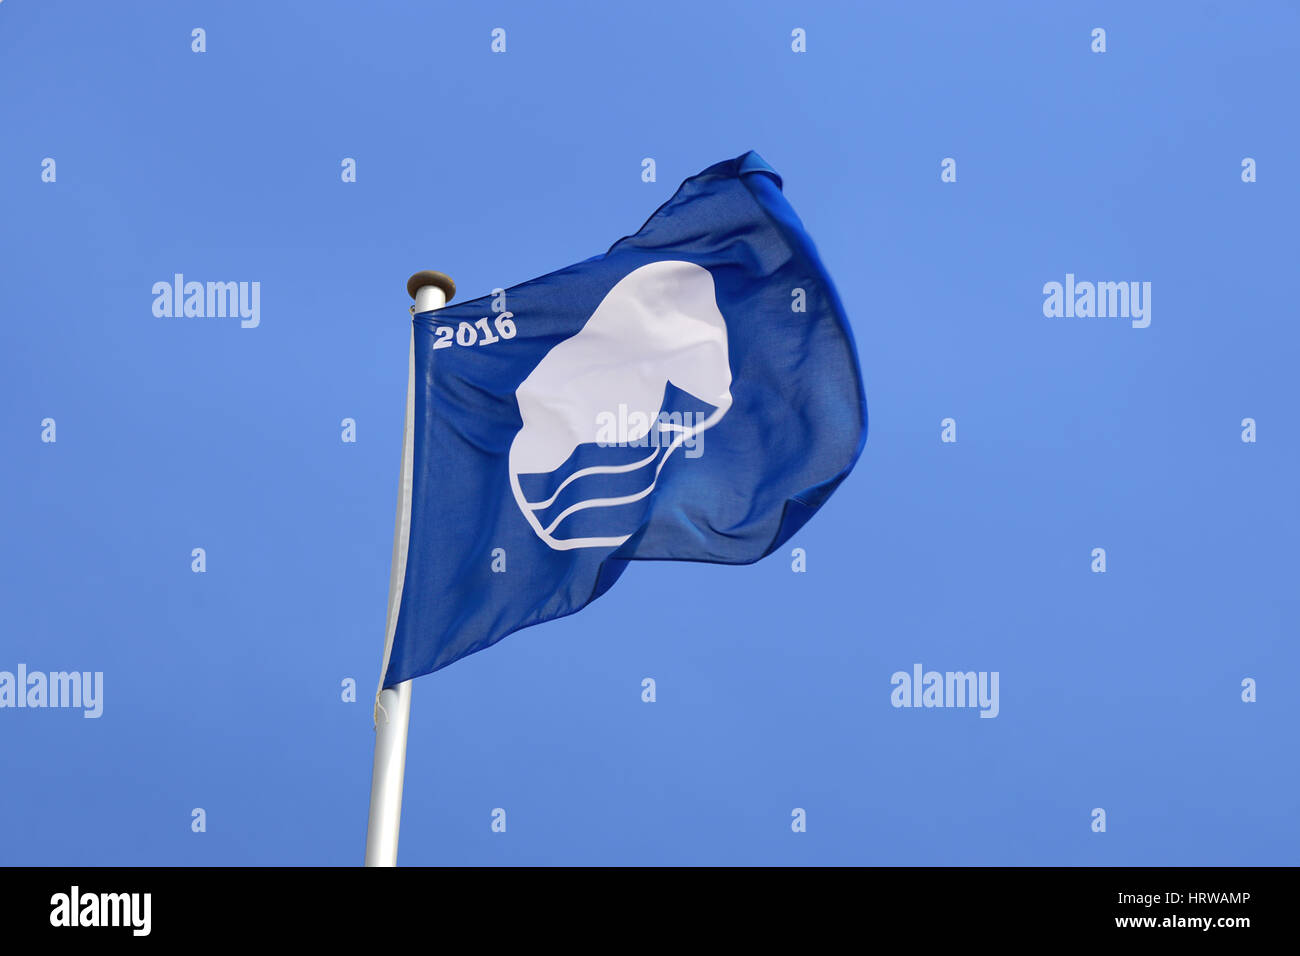 Rostock, Deutschland - 30. Mai 2016: Warnemünde Strand die blaue Flagge von der Foundation for Environmental Education, FEE, für mich erhielt Zertifizierung Stockfoto